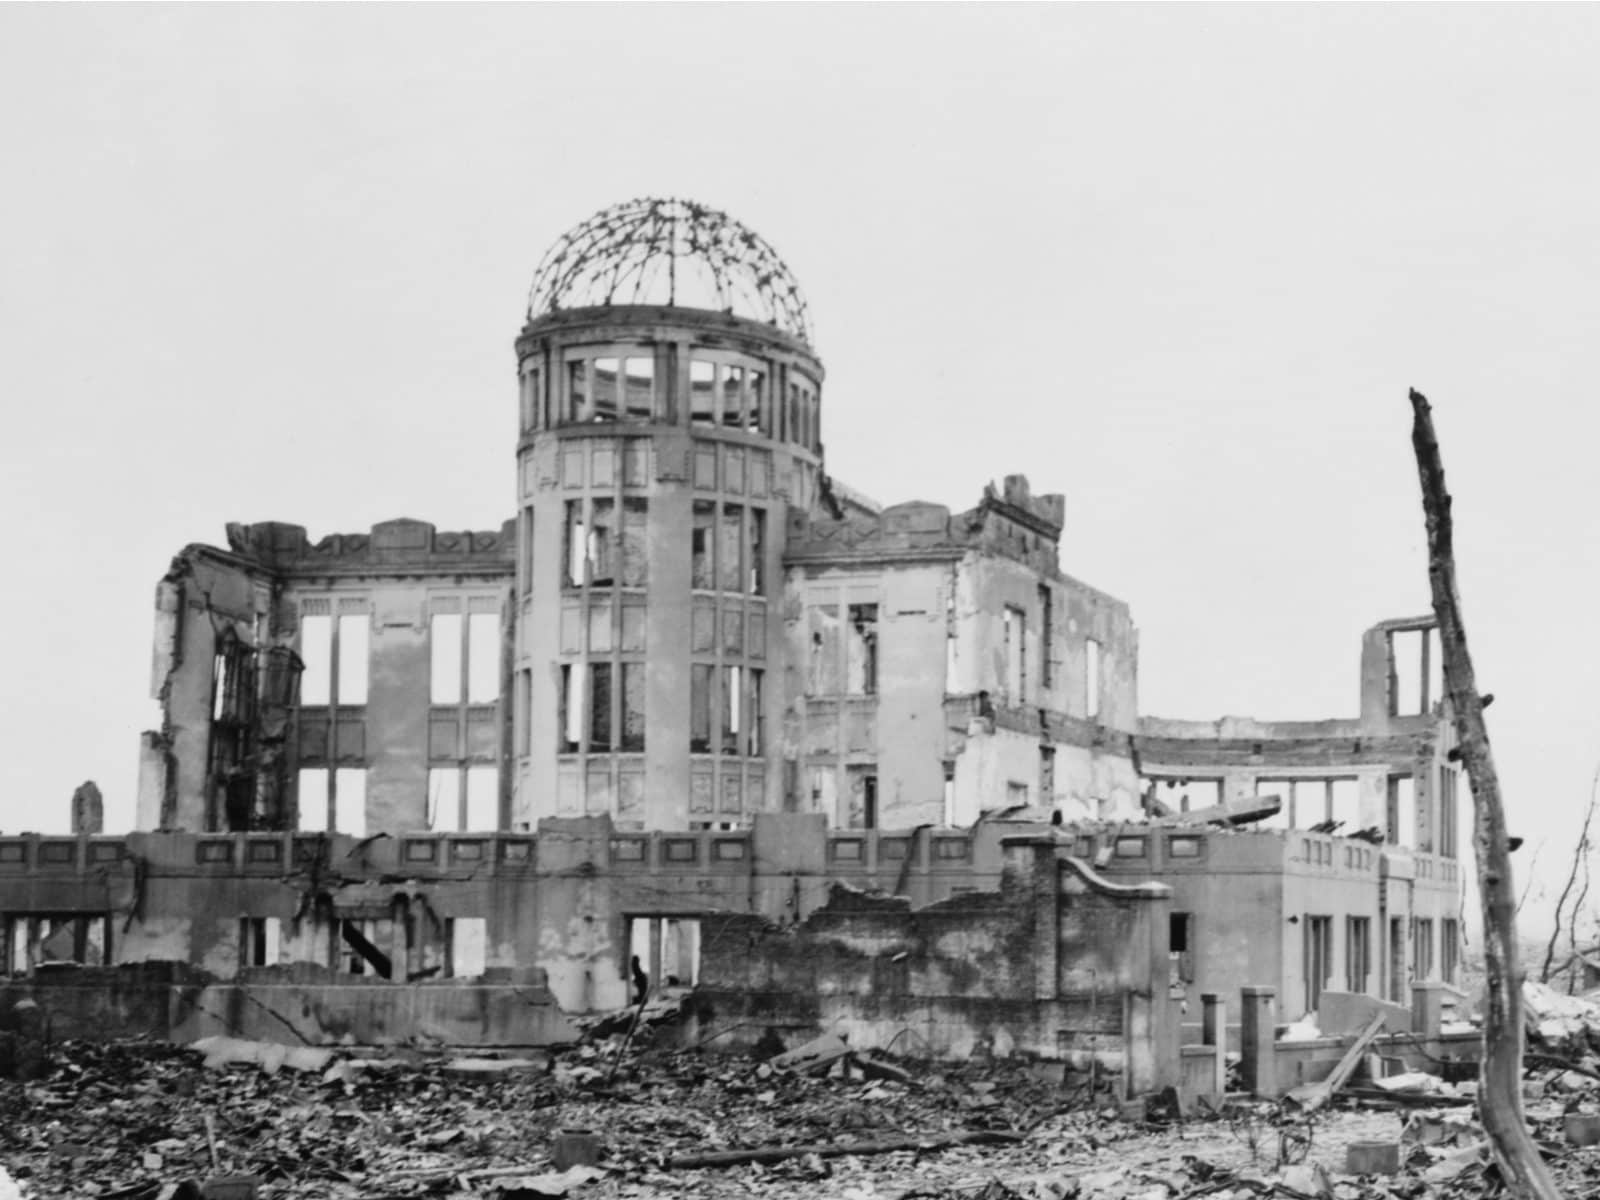 Hiroshima Day 2021: 5 Eyewitness Accounts of the Hiroshima Bombing 76 Years  Ago